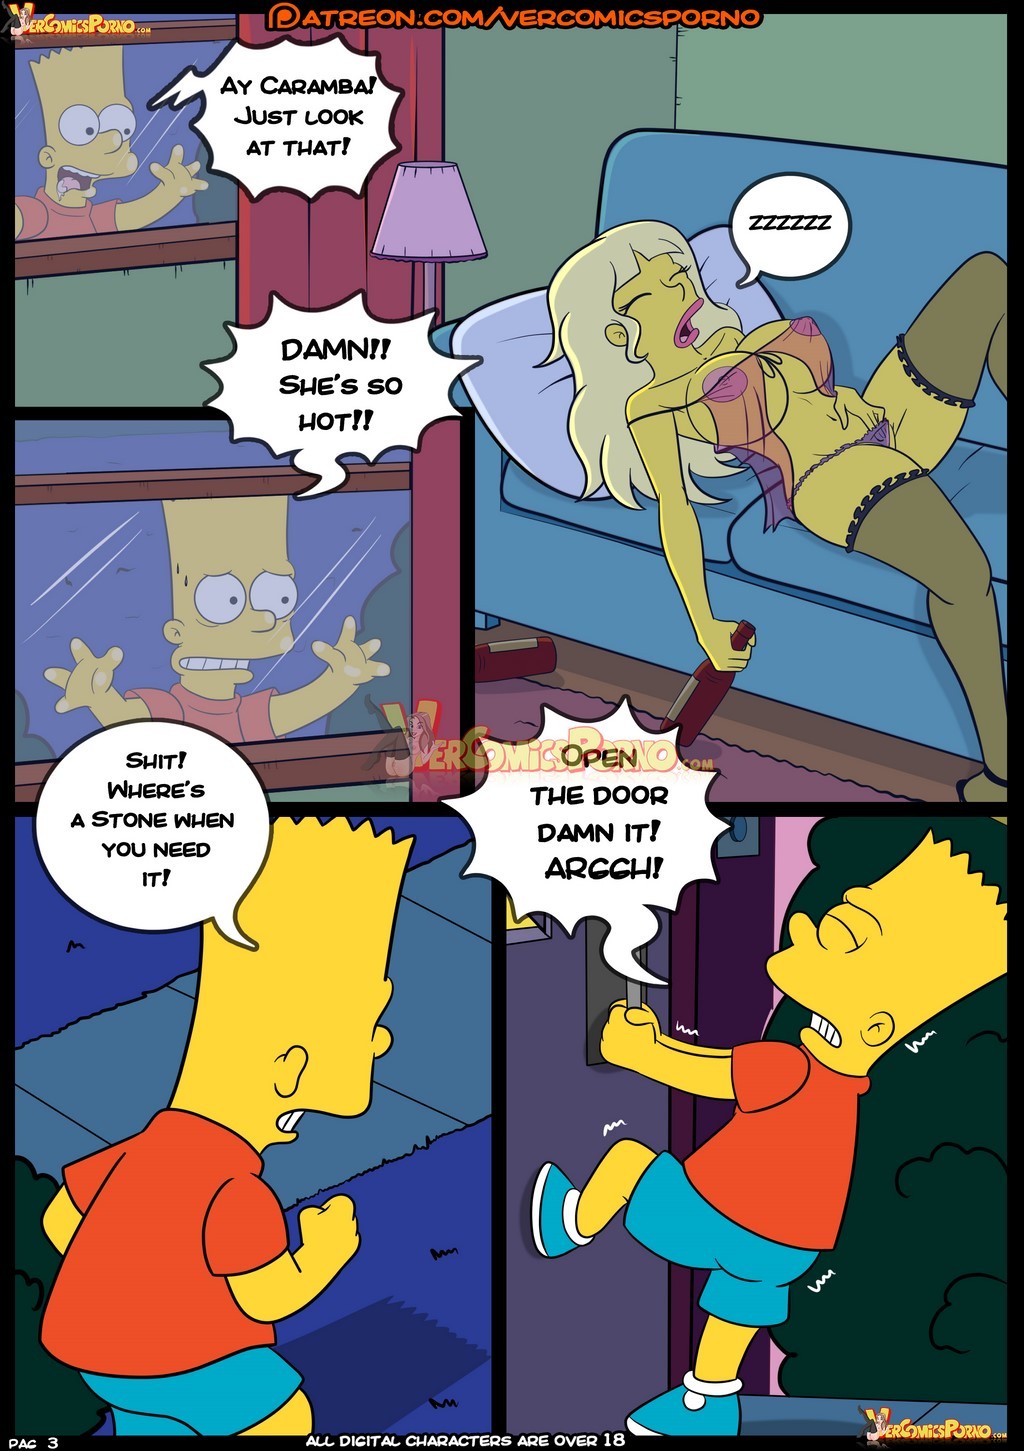 croc] - The Simpsons 8 (the simpsons) porn comic. Big breasts porn comics.